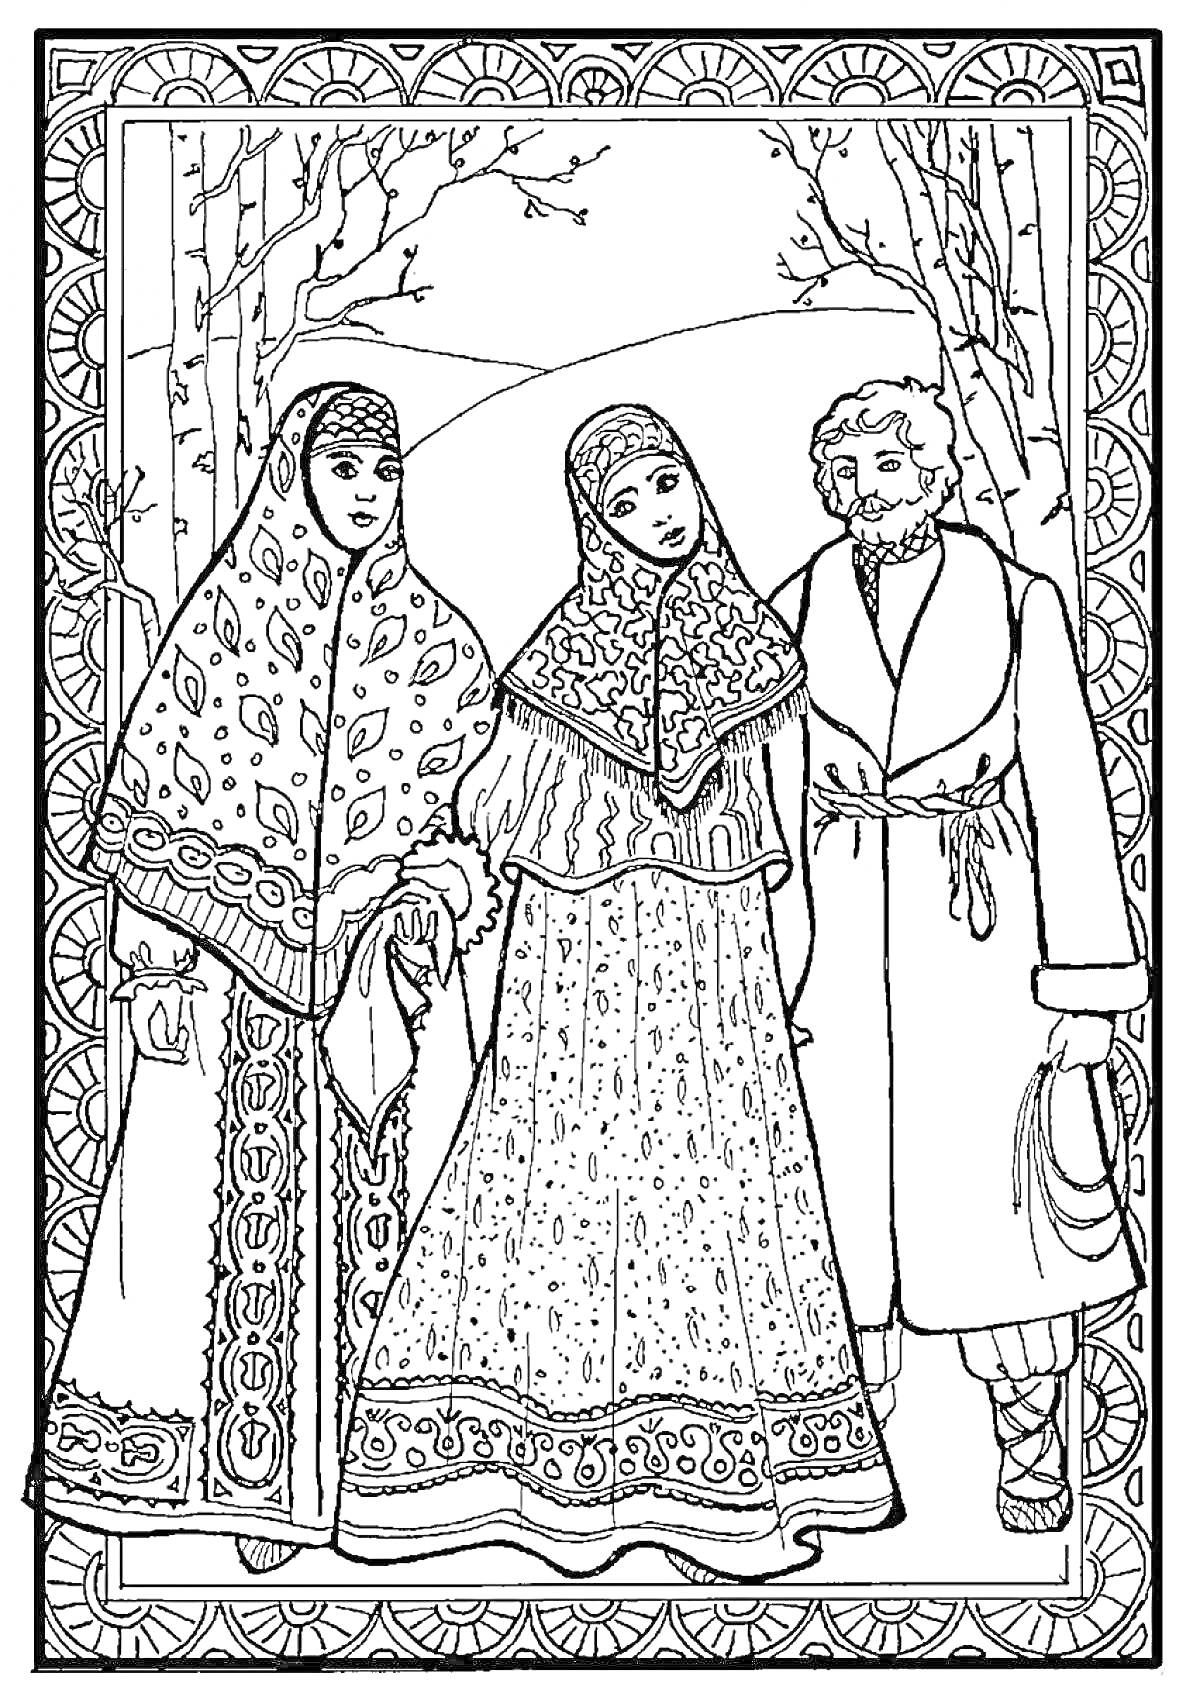 Две женщины и мужчина в русском народном костюме, в лесу зимой. Женщины одеты в сарафаны и расписные платки, мужчина в длинный традиционный кафтан с поясом и меховой шапочкой.